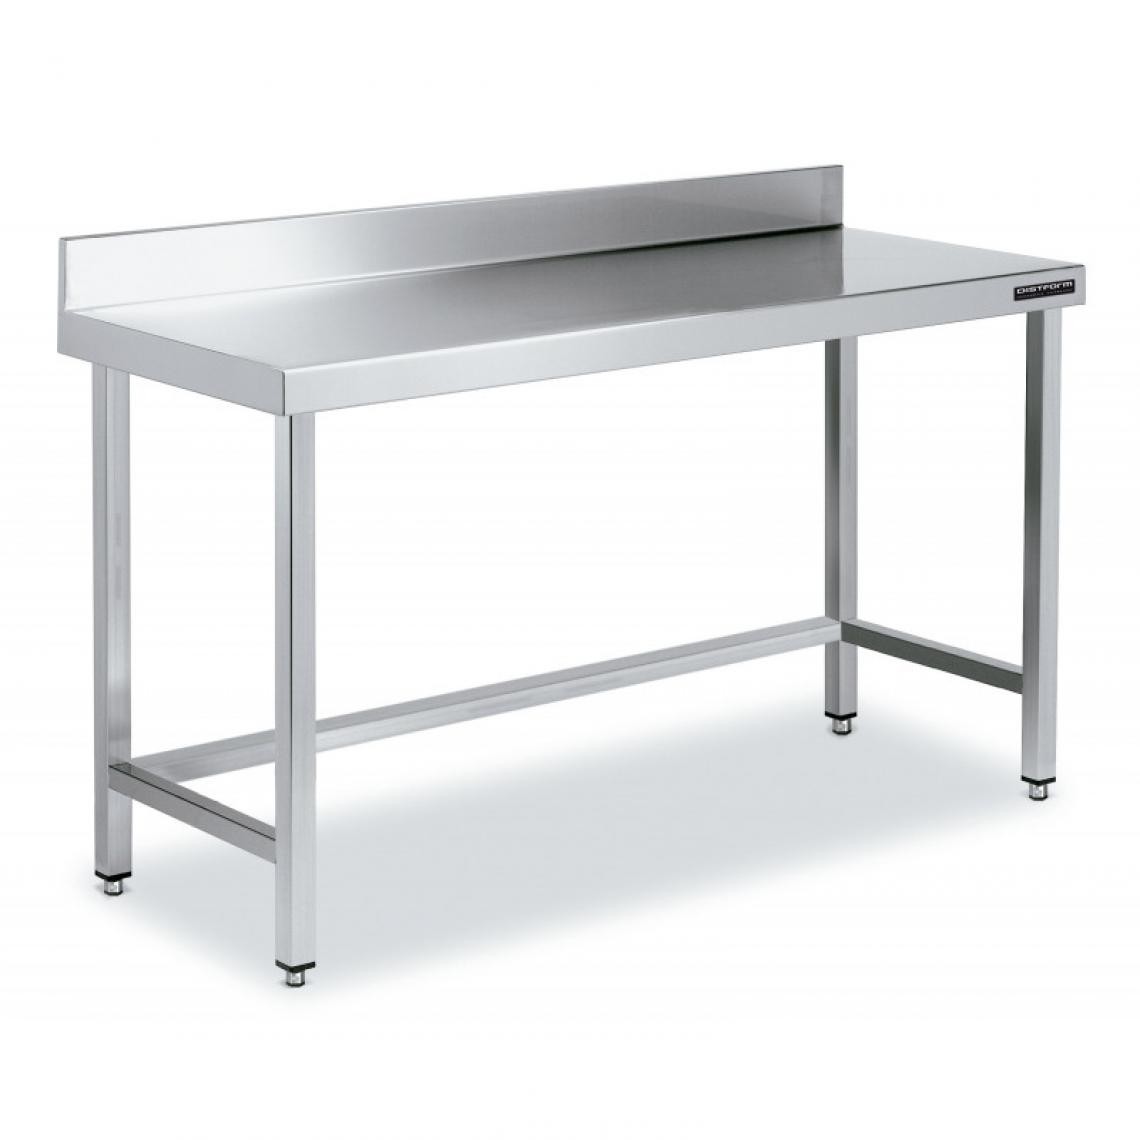 DISTFORM - Table de Travail Adossée Inox avec Renforts - Gamme 600 - Hauteur 600 - Distform - Acier inoxydable2600x600 - Tables à manger